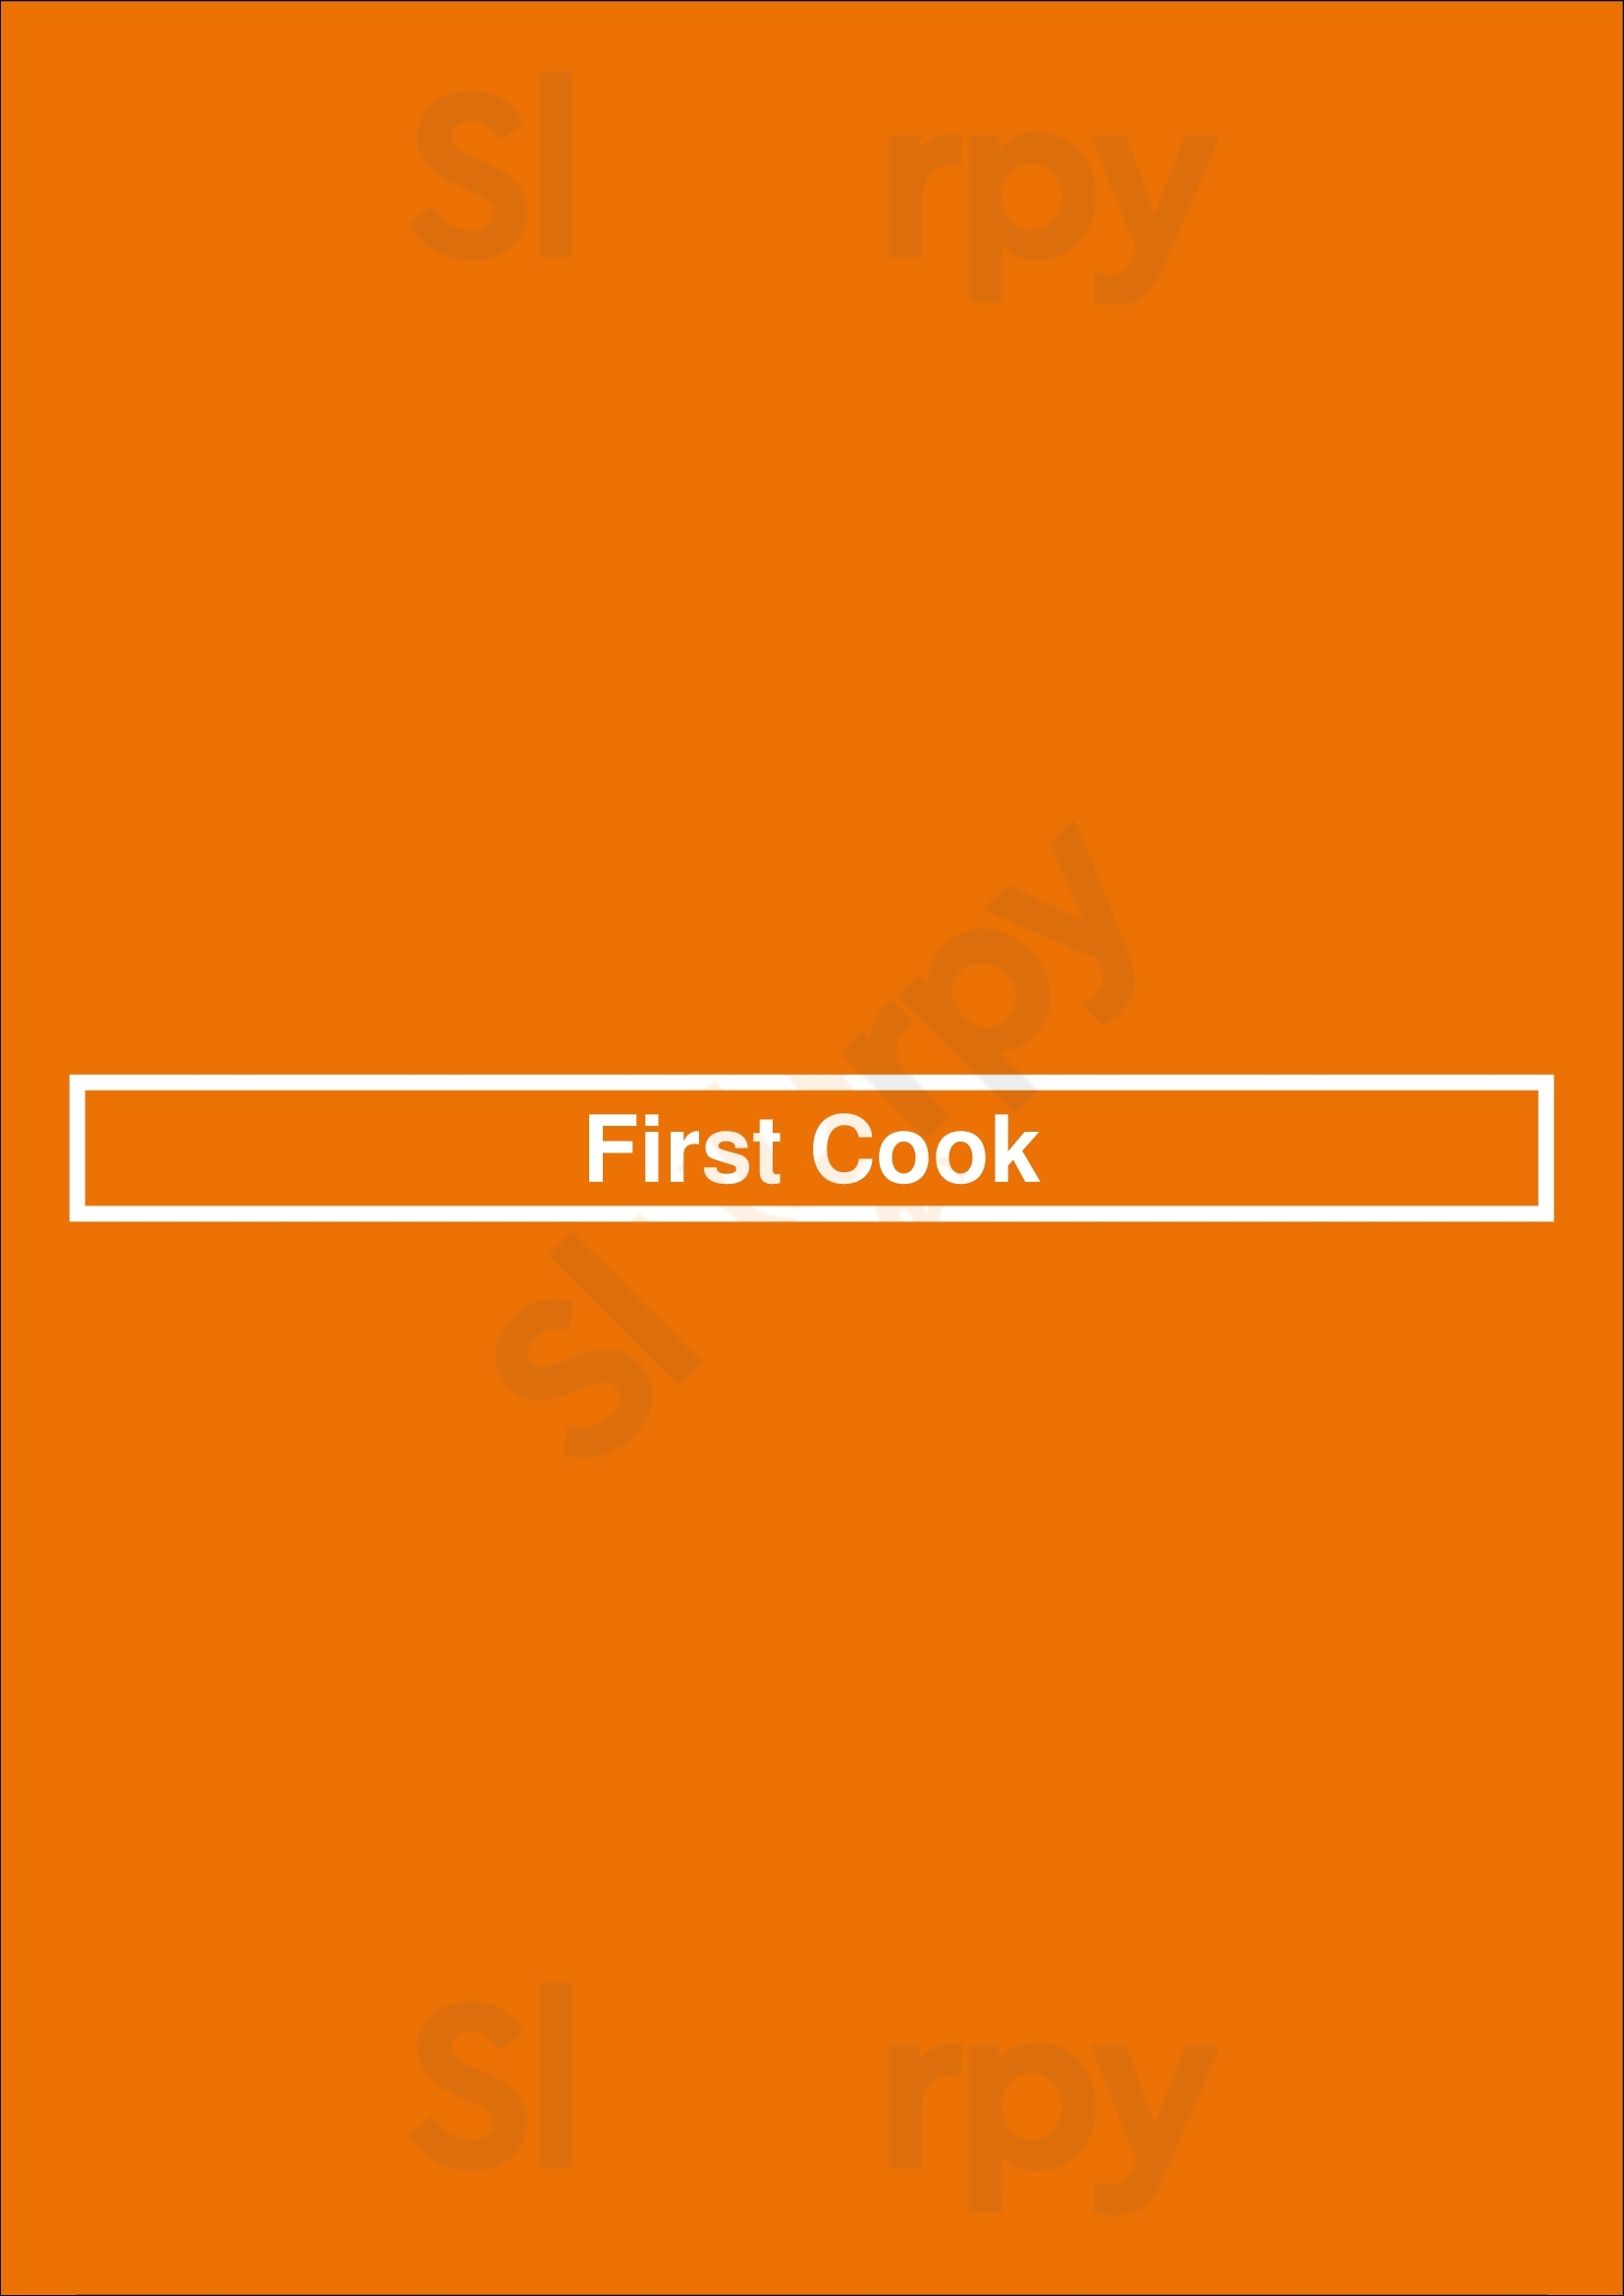 First Cook Brooklyn Menu - 1